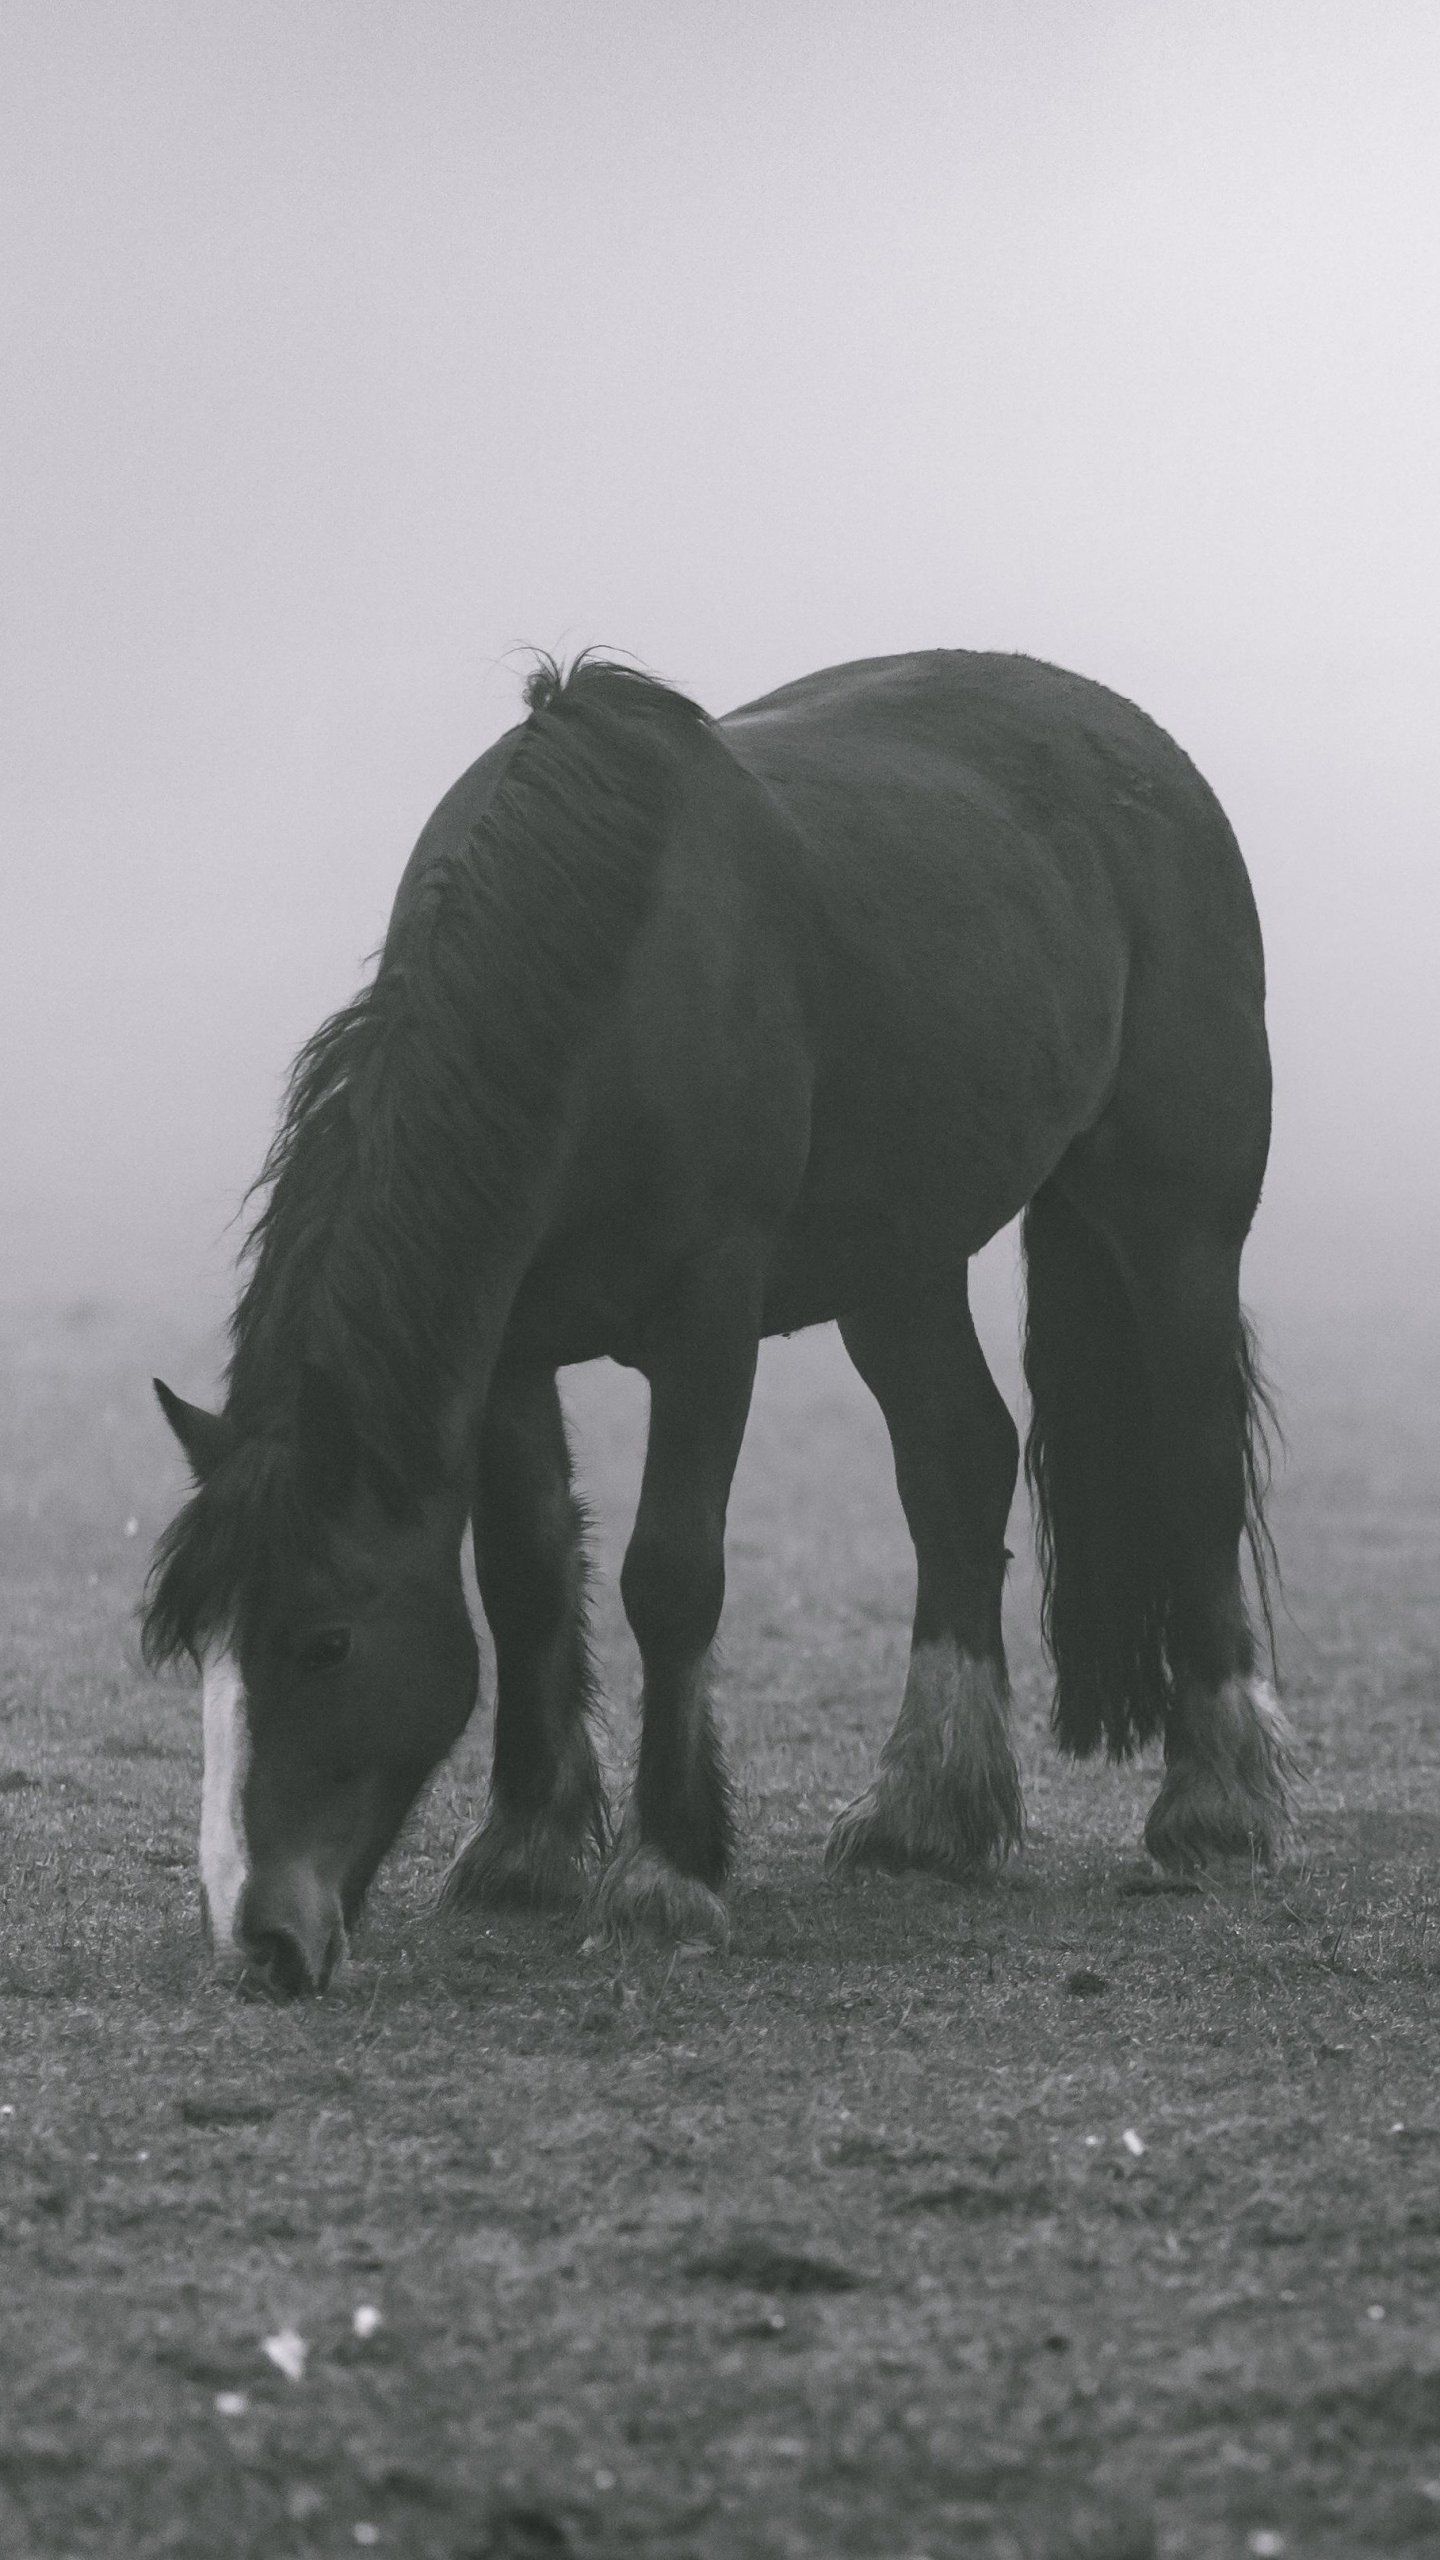 A horse grazing in a field - Horse, fog